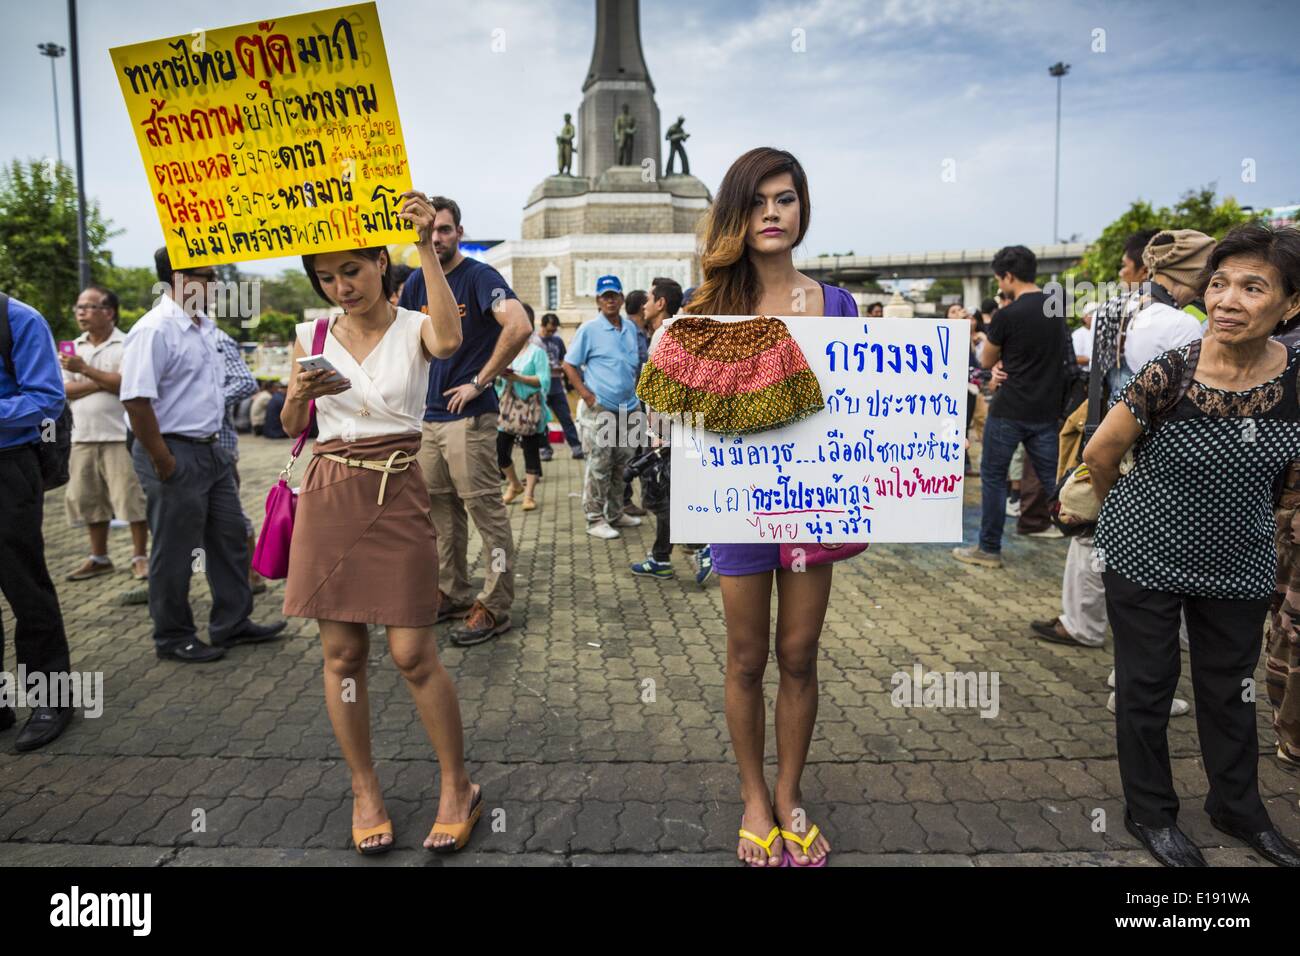 Bangkok, Bangkok, Tailandia. 27 de mayo de 2014. Dos mujeres y un ''katoey'' o ladyboy, en el Monumento a la victoria en Bangkok protesta contra el golpe de estado. Varios cientos de personas protestaron contra el golpe de estado en Bangkok en el Monumento a la victoria. Fue el cuarto día consecutivo de manifestaciones en favor de la democracia en la capital tailandesa, el ejército siguió apretando su agarre en la vida tailandesa. La protesta del martes fue la más pequeña hasta la fecha. Crédito: Jack Kurtz/ZUMAPRESS.com/Alamy Live News Foto de stock